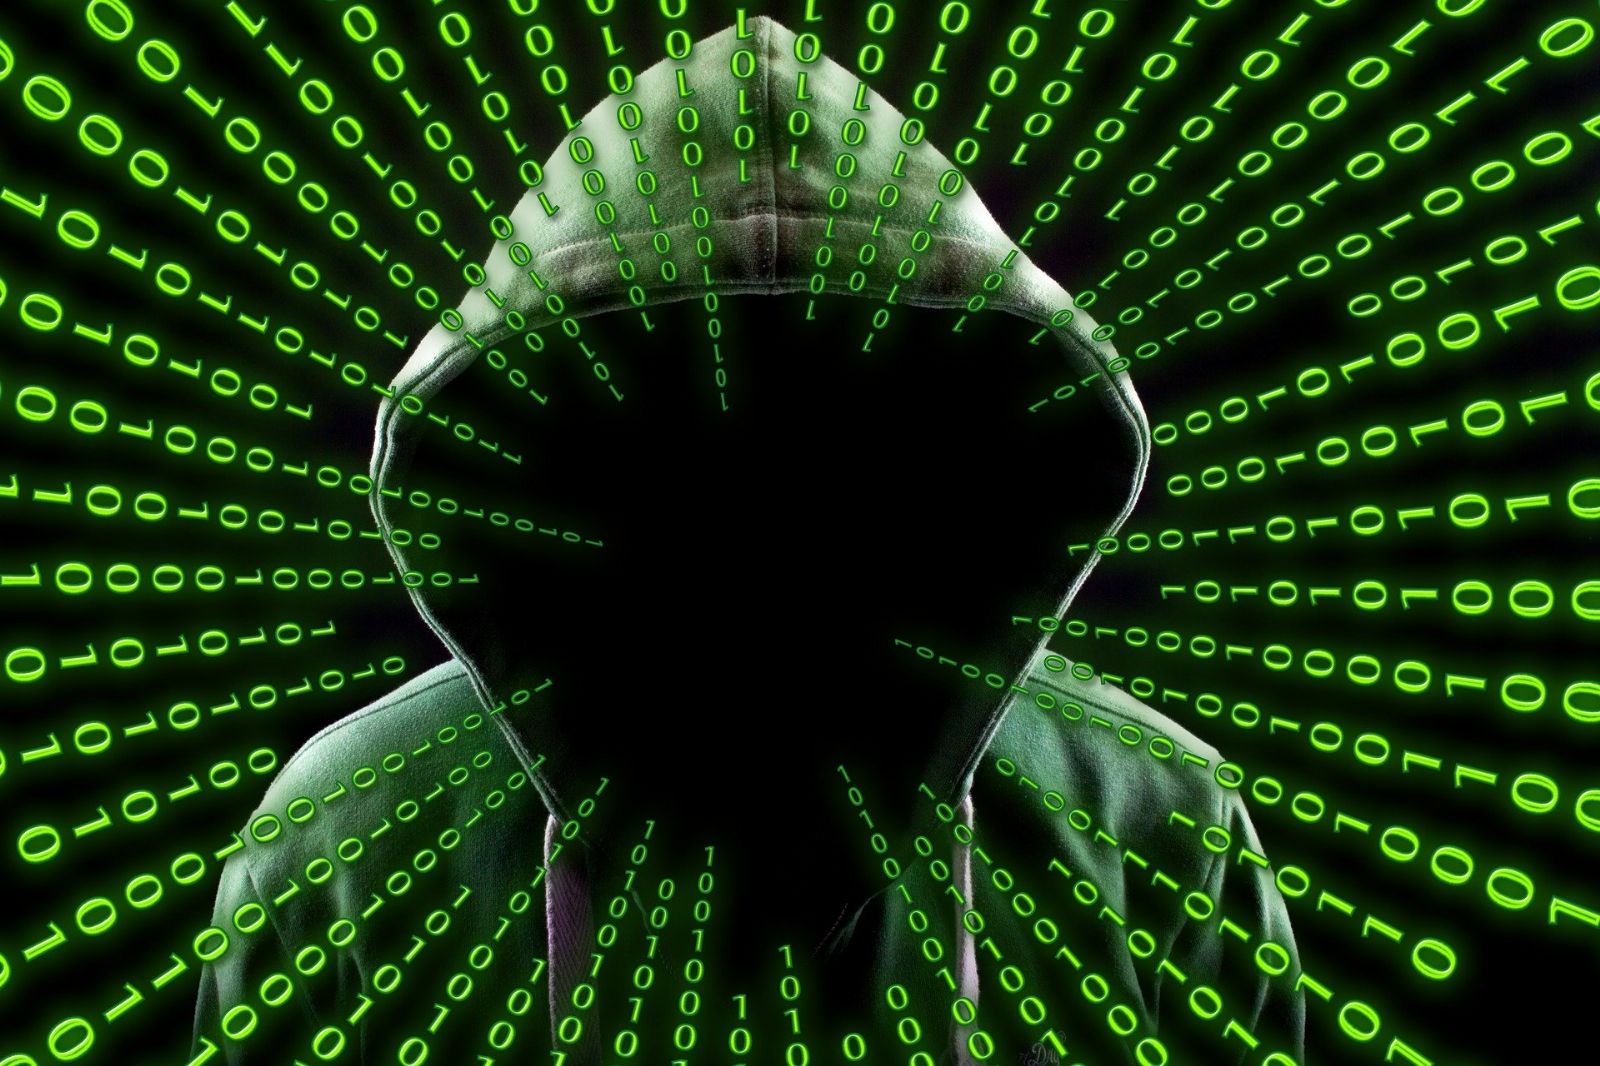 Národní úřad pro kybernetickou a informační bezpečnost a Ministerstvo zdravotnictví vydaly doporučení ke snížení kybernetických hrozeb pro zdravotnická zařízení